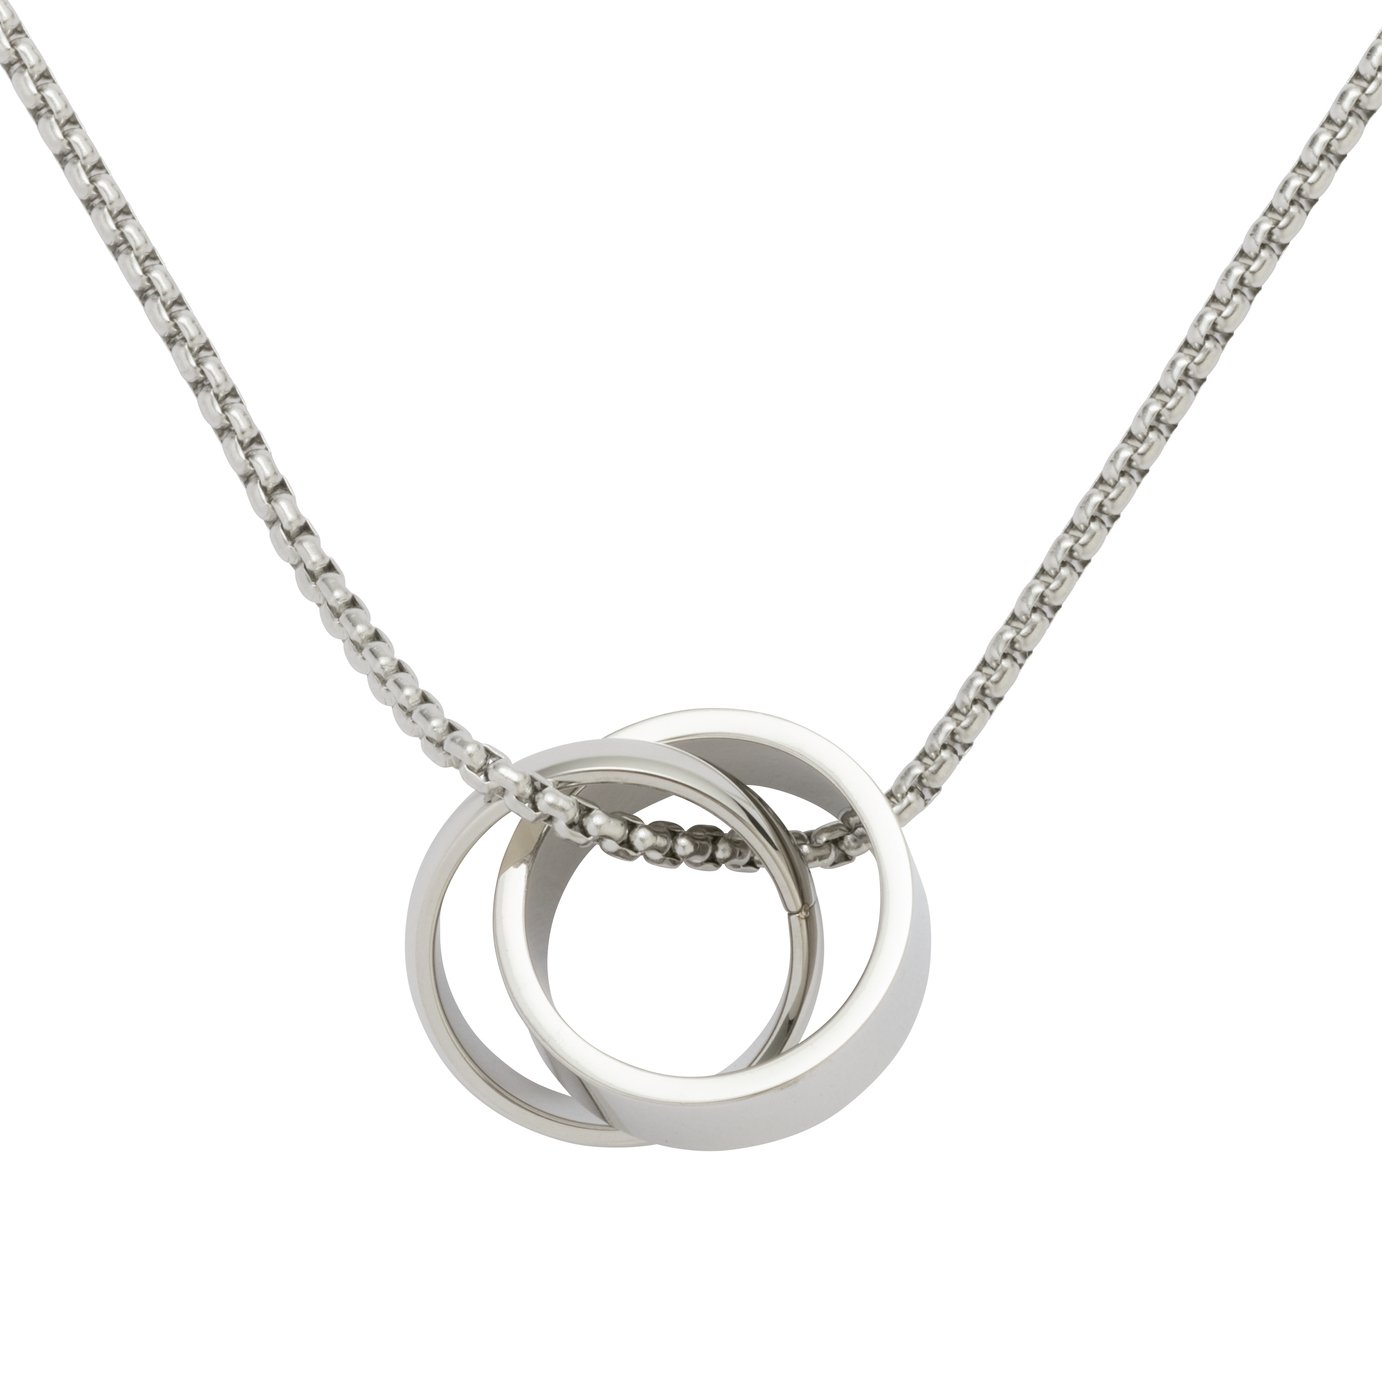 Revere Men's Stainless Steel Linking Ring Pendant Necklace